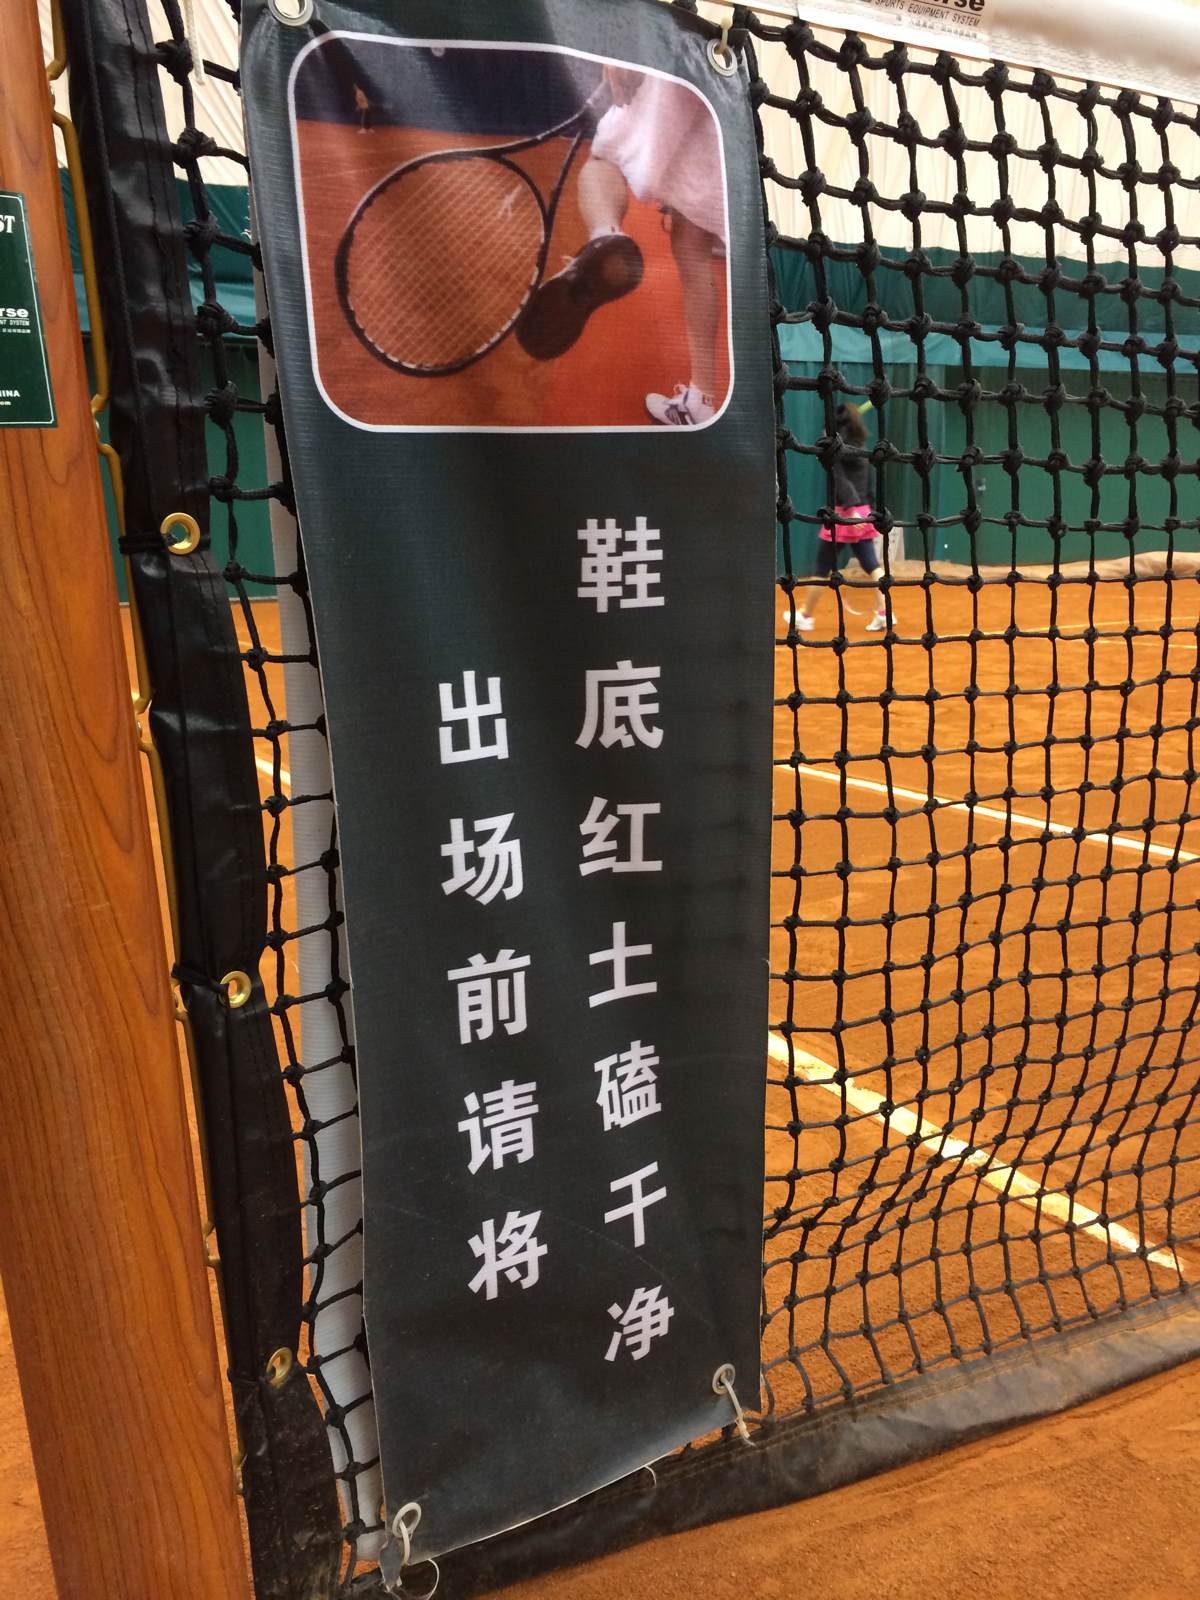 北京国家网球中心红土场地预订